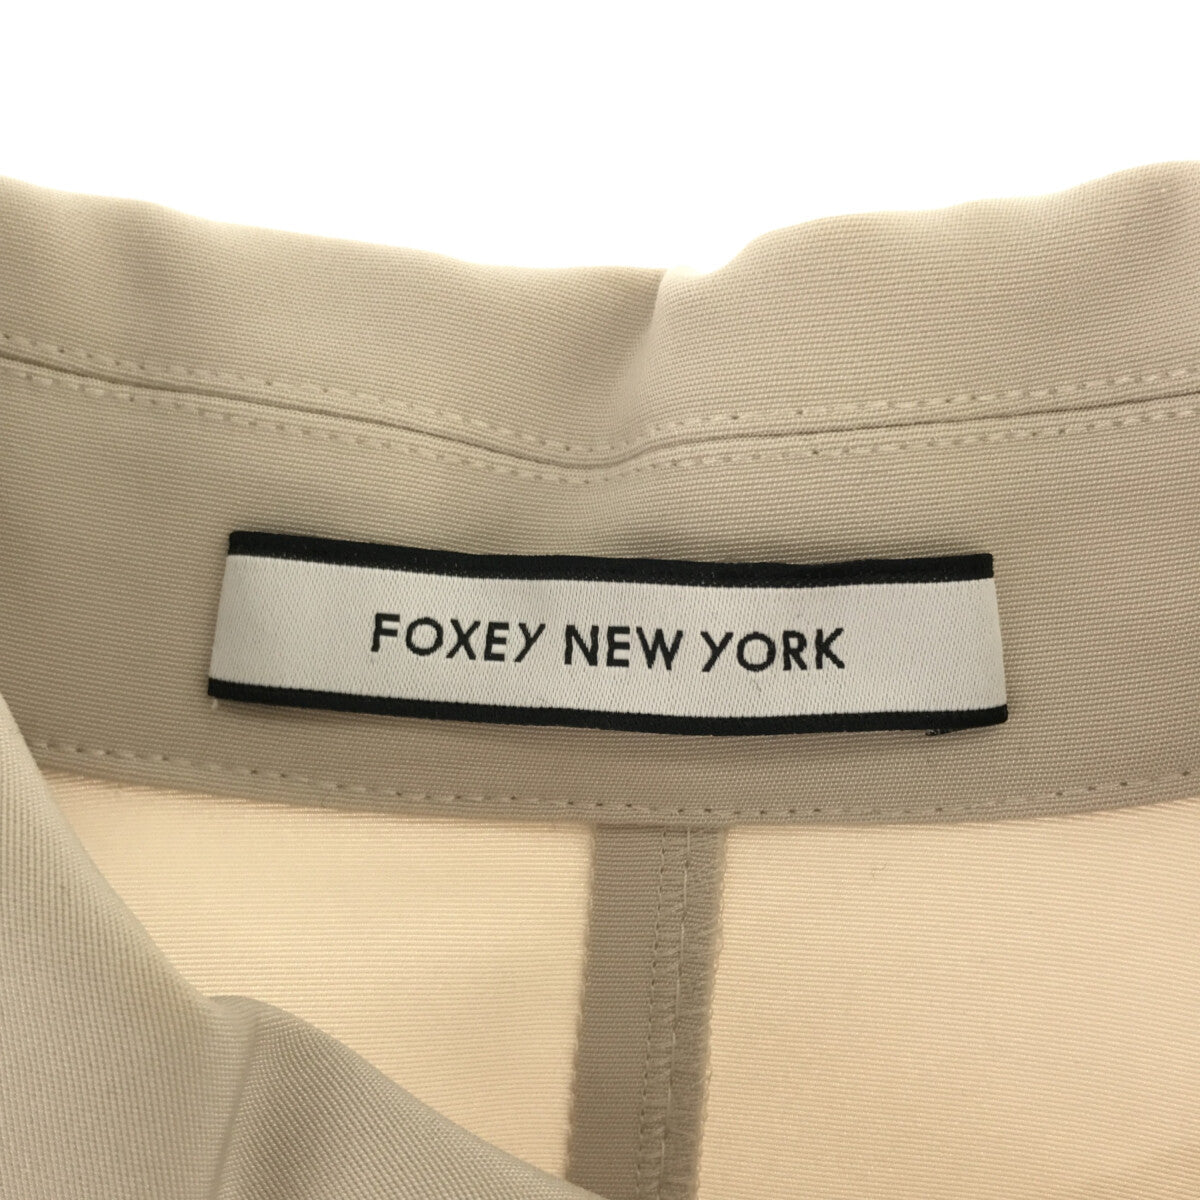 素材合成皮革【良品】FOXEY NEW YORK ライダースジャケット